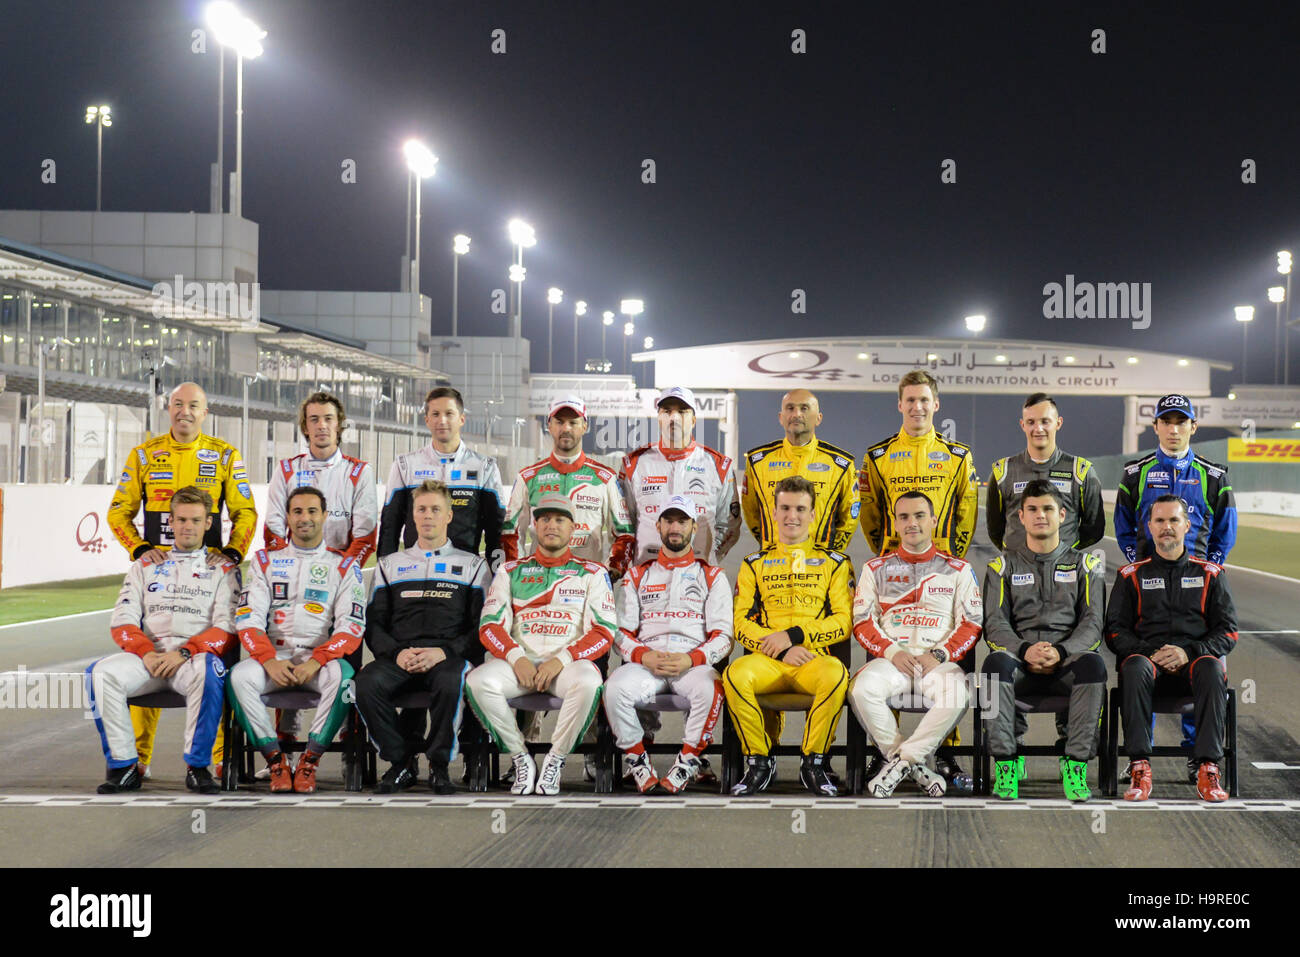 Le Circuit International de Losail, au Qatar, le 24 Nov 2016. Les coureurs posent pour une photo de groupe avant la FIA WTCC Crédit : Gina Layva/Alamy Live News Banque D'Images